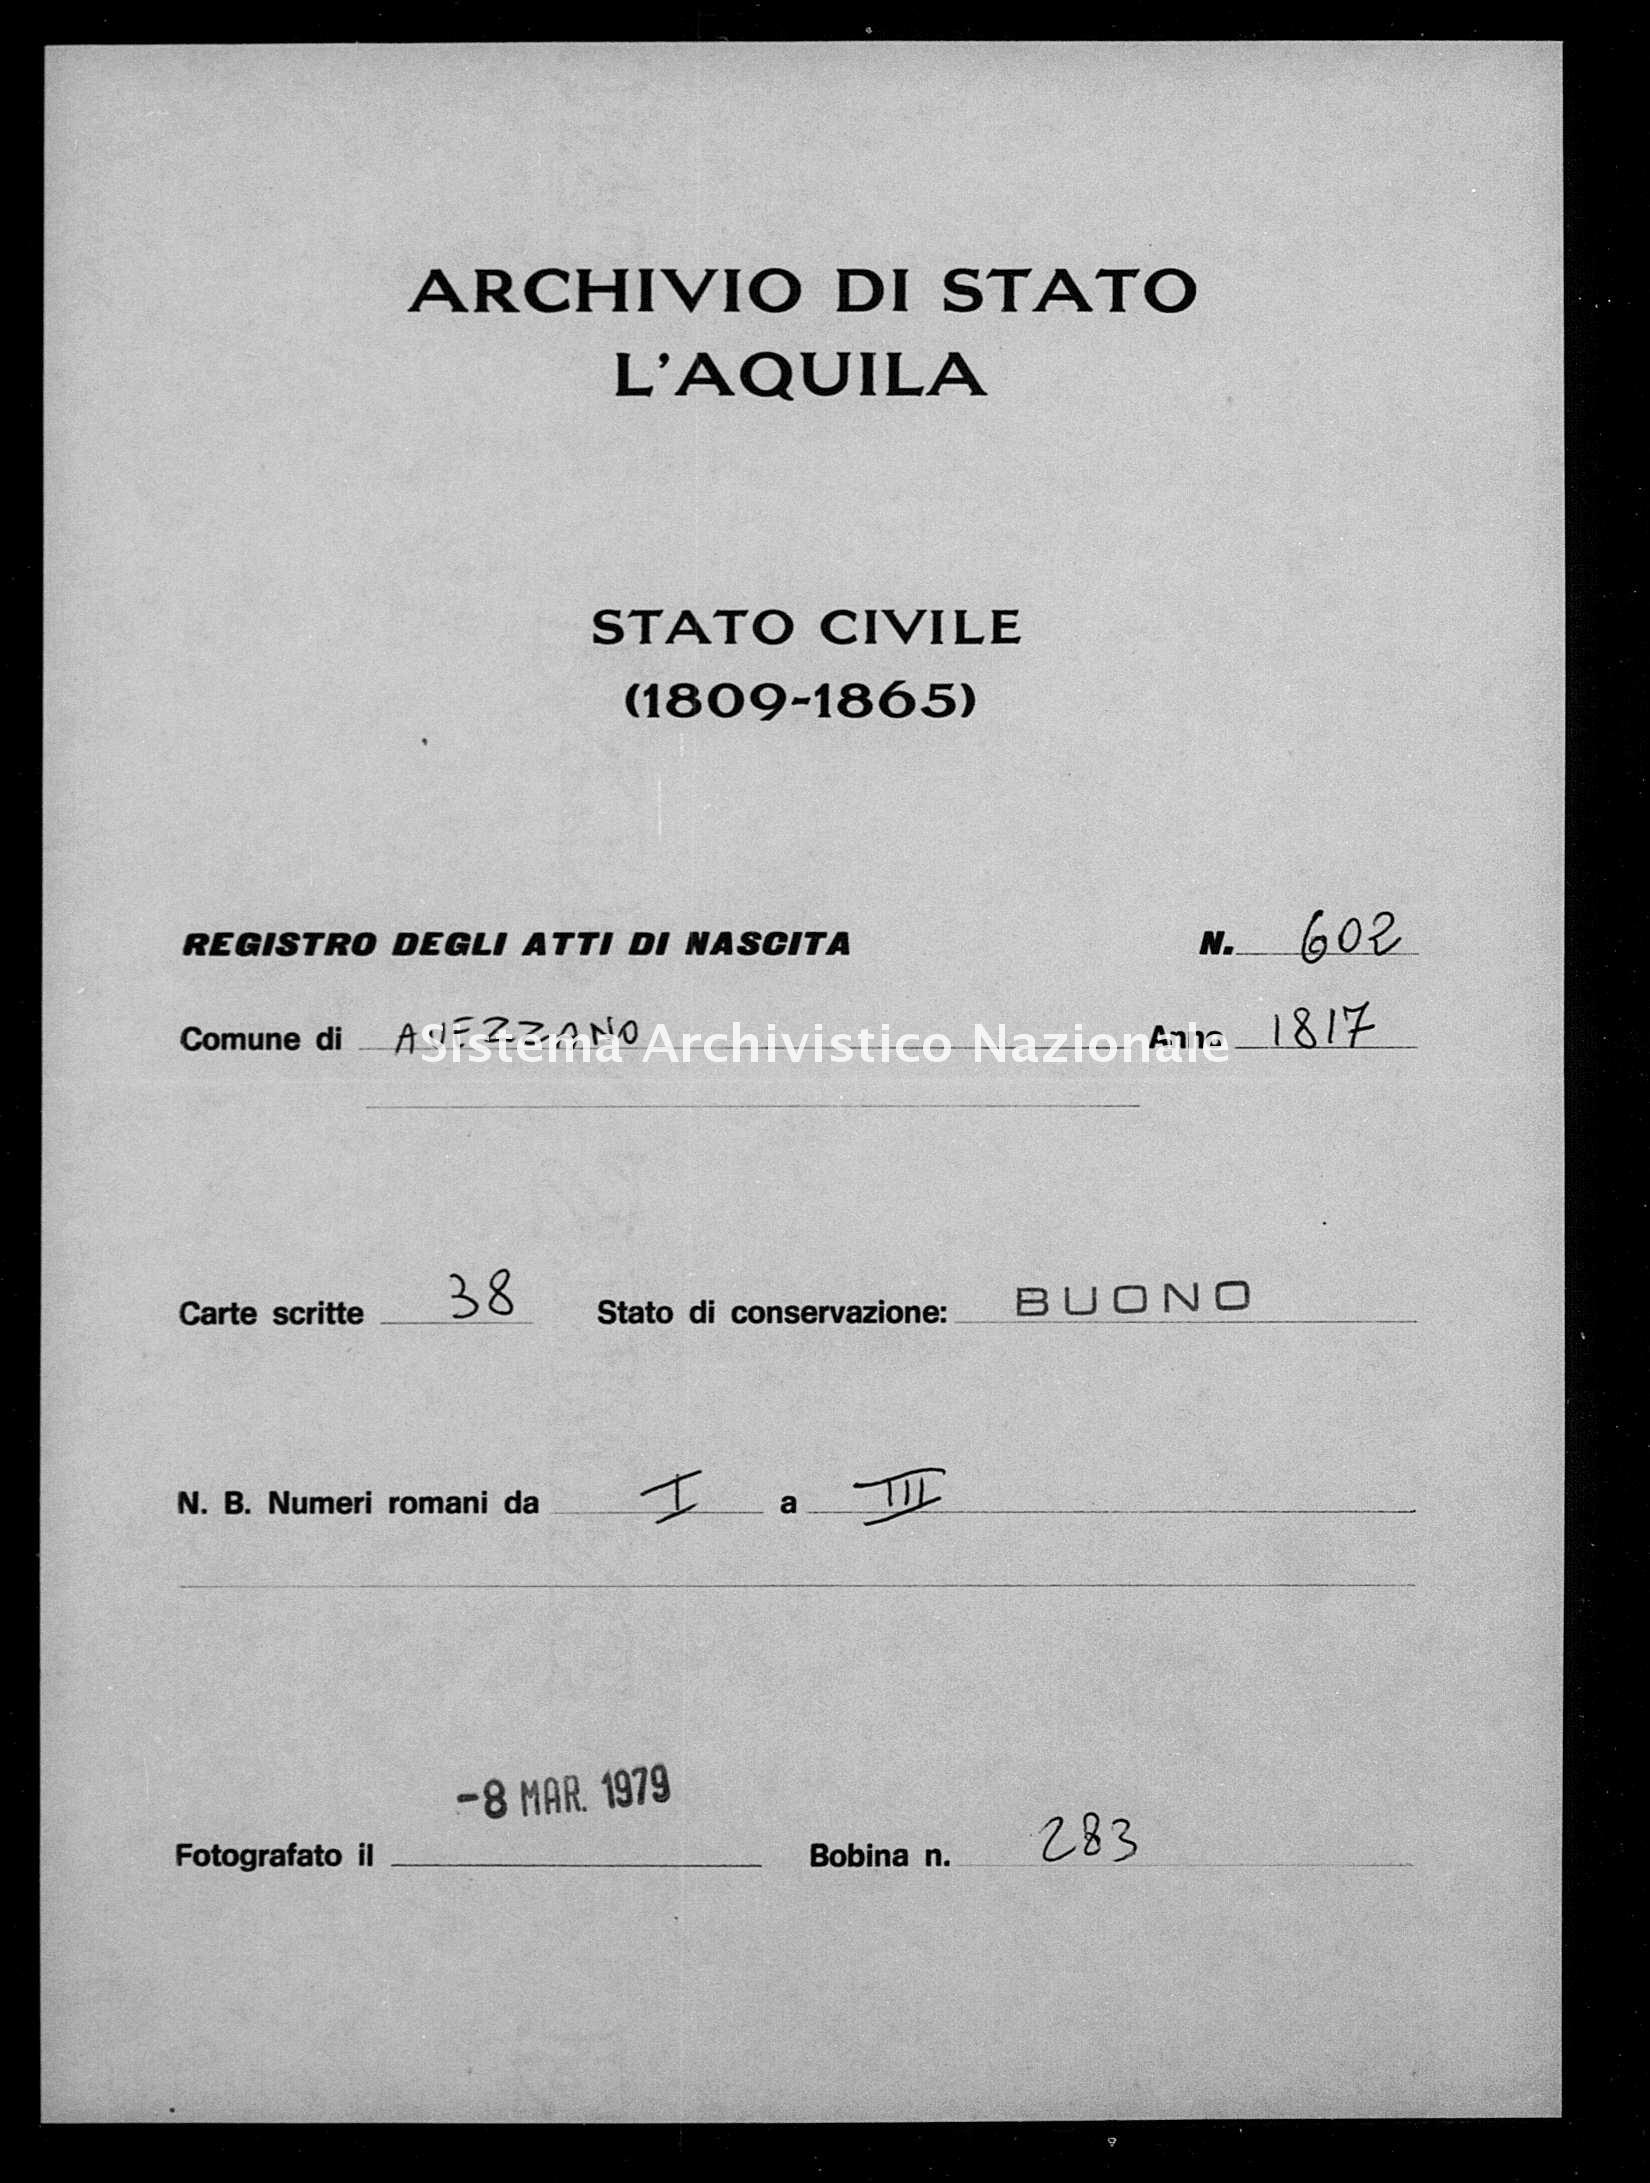 Archivio di stato di L'aquila - Stato civile della restaurazione - Avezzano - Nati - 1817 - 602 -